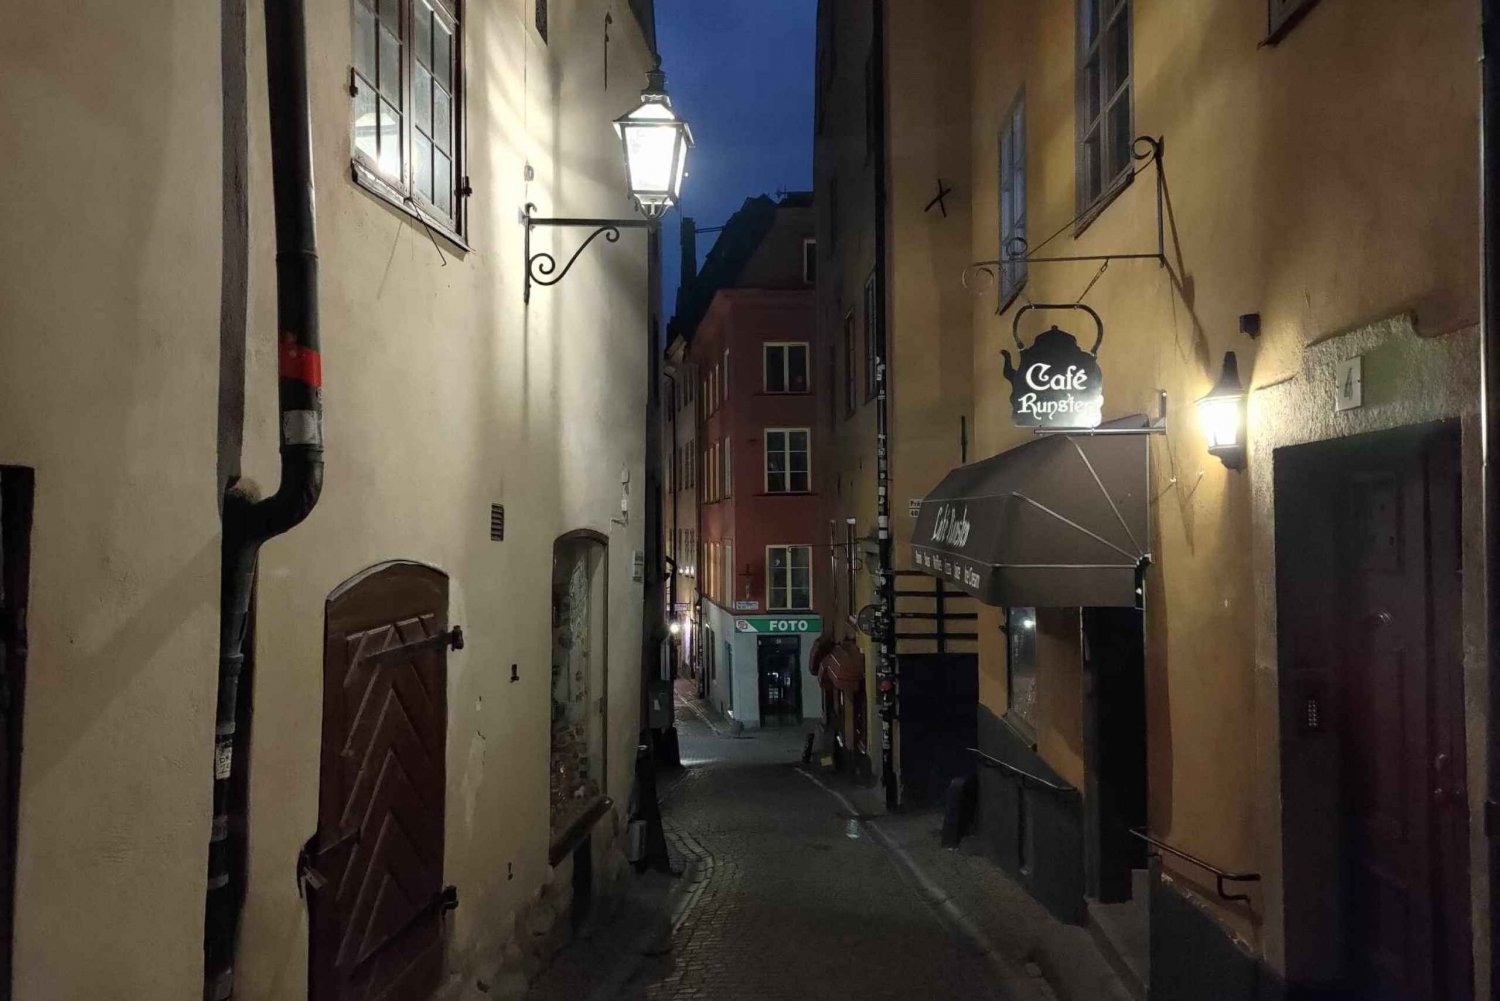 Blodige Stockholm: spøgelser, gys og mørk folklore 2 timer